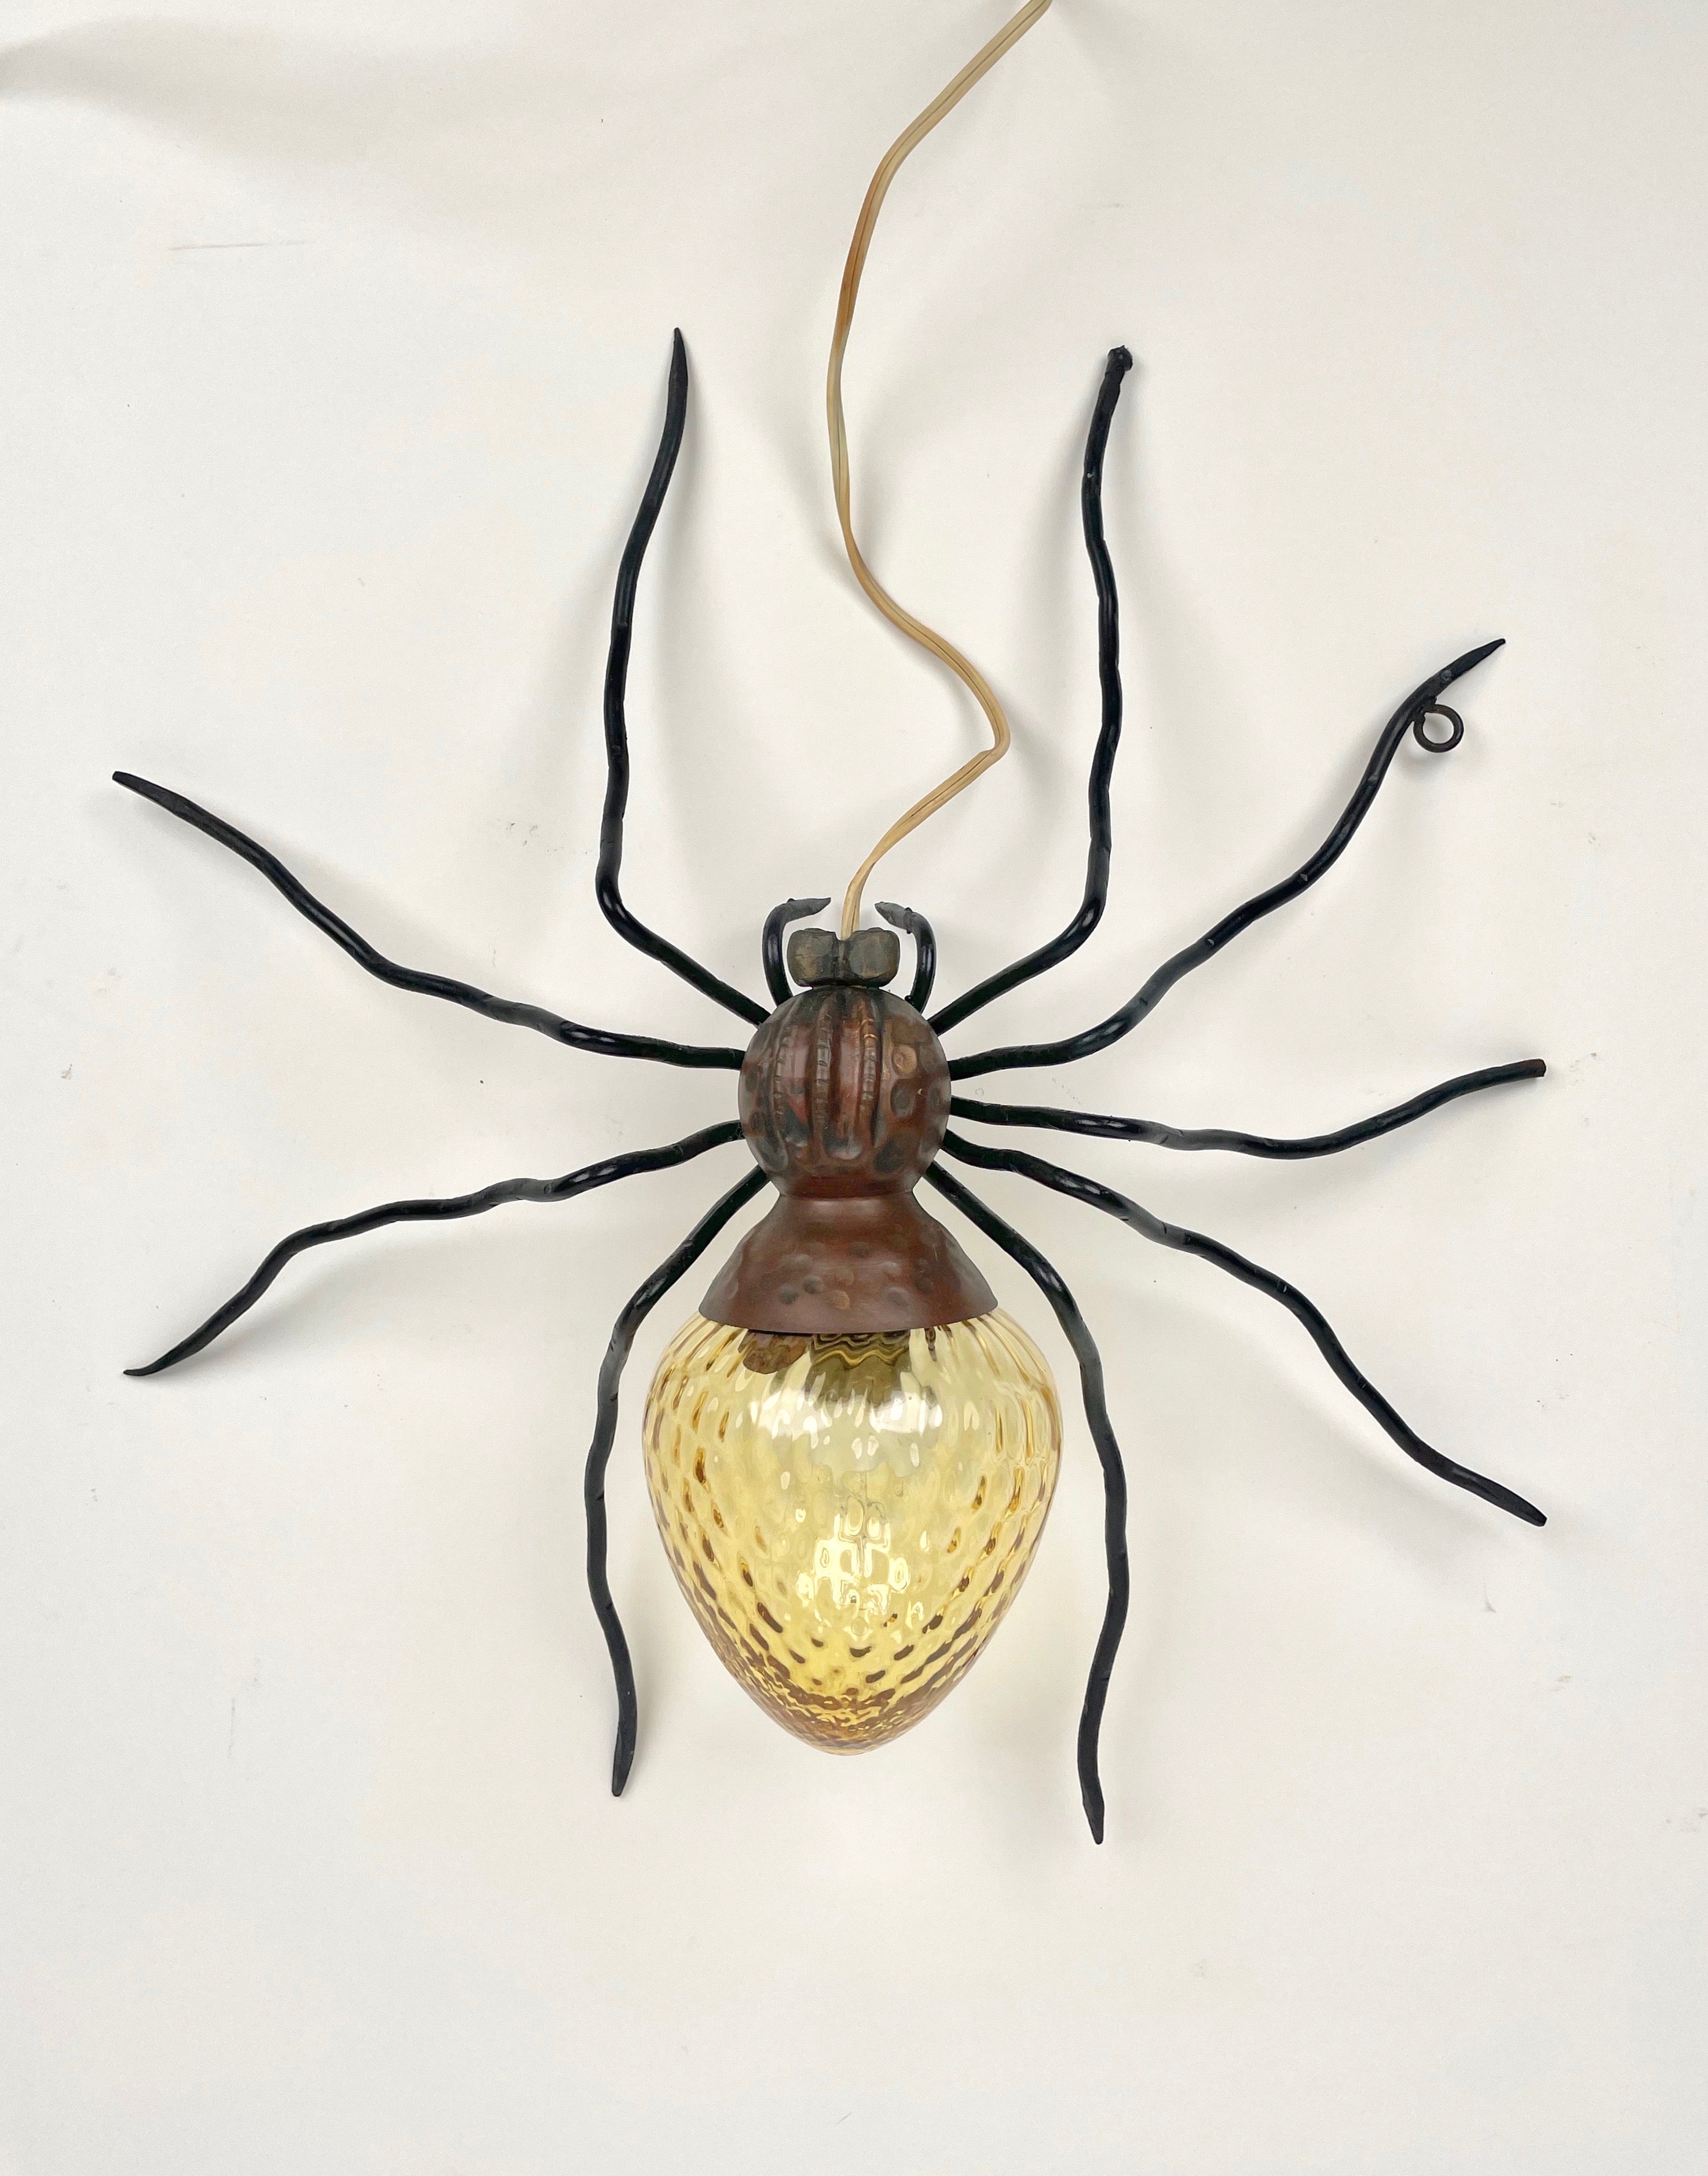 Spider Wandleuchte aus Kupfer, Eisen und gelbem Kunstglas, hergestellt in Italien in den 1960er Jahren. 

Diese Lampe ist eine typische Außenlampe, die über der Eingangstür italienischer Häuser der 1960er Jahre angebracht wurde. 

Heutzutage